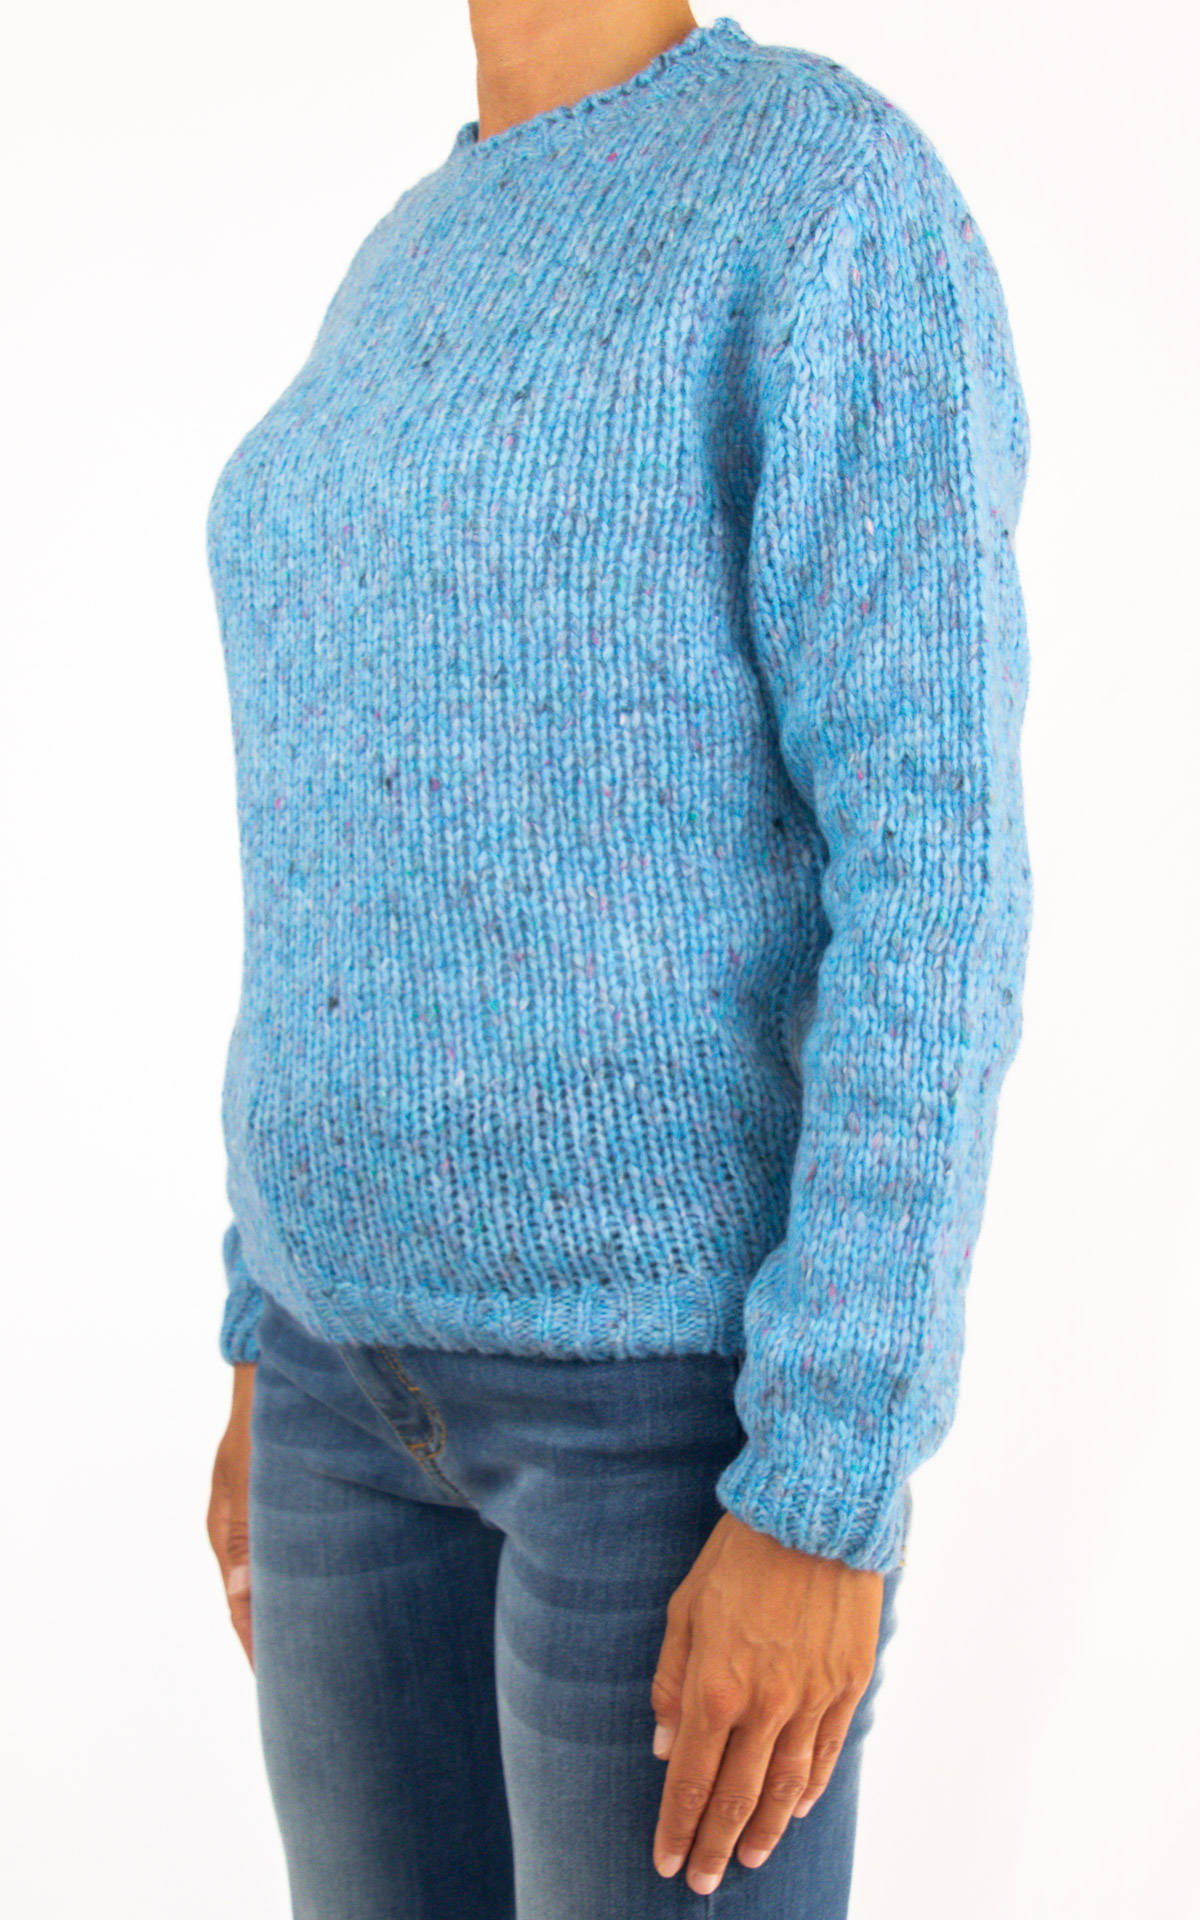 Off-On - maglia in lana - azzurro